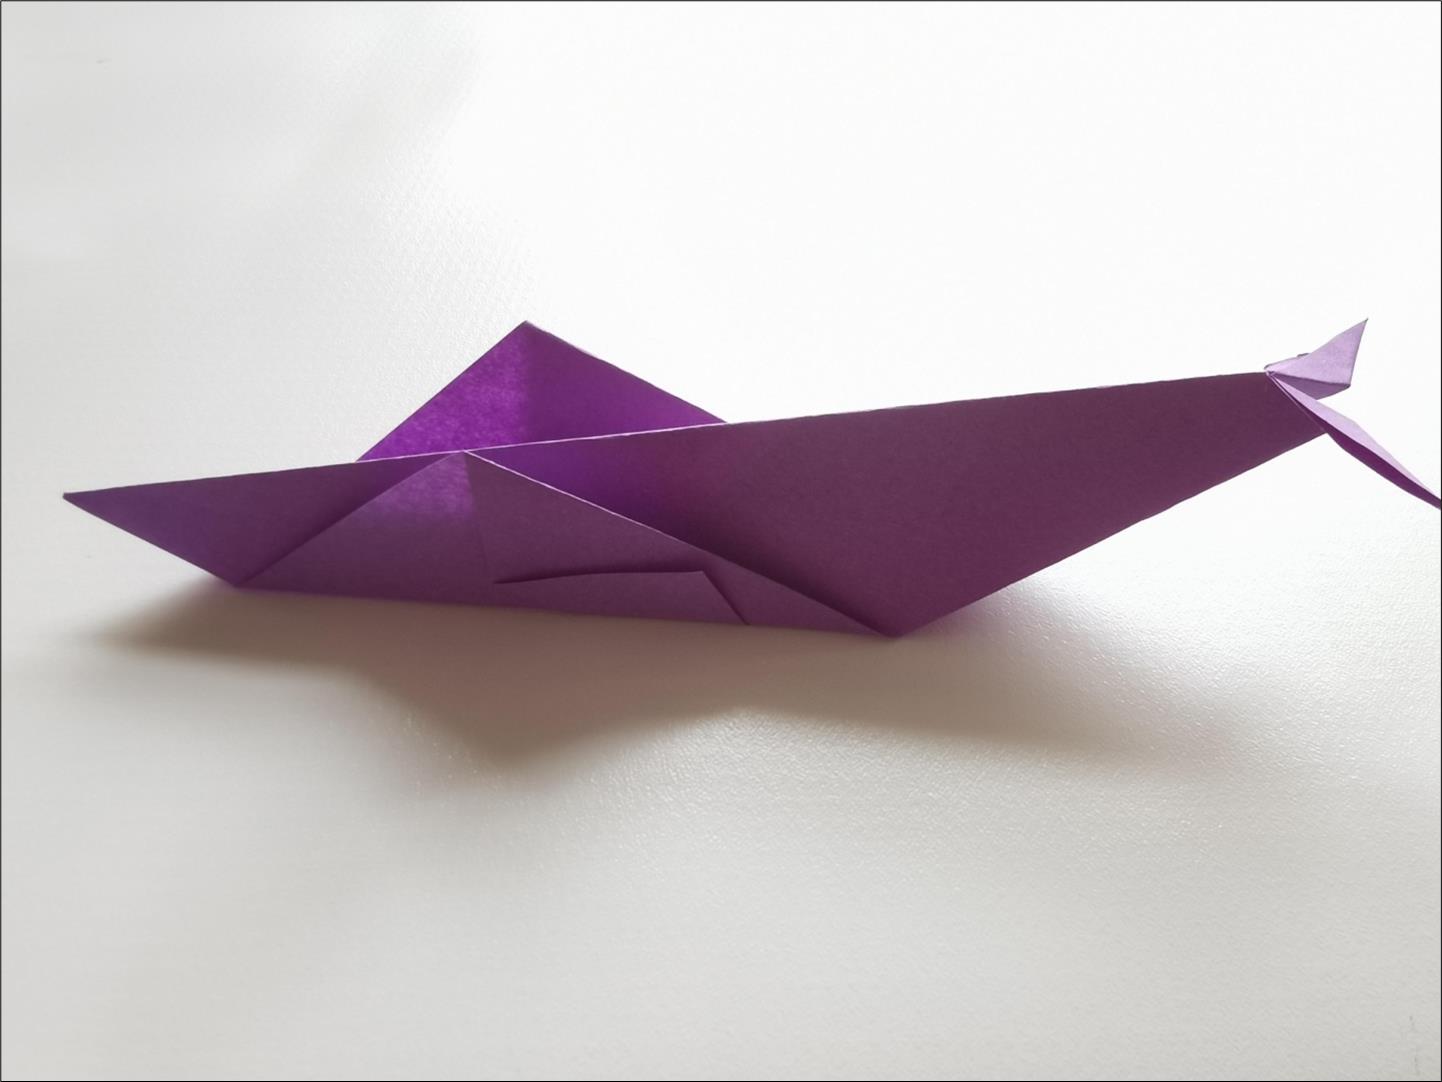 金鱼几何折纸3D立体纸模型纸雕刻立体构成DIY手工创意摆件-阿里巴巴